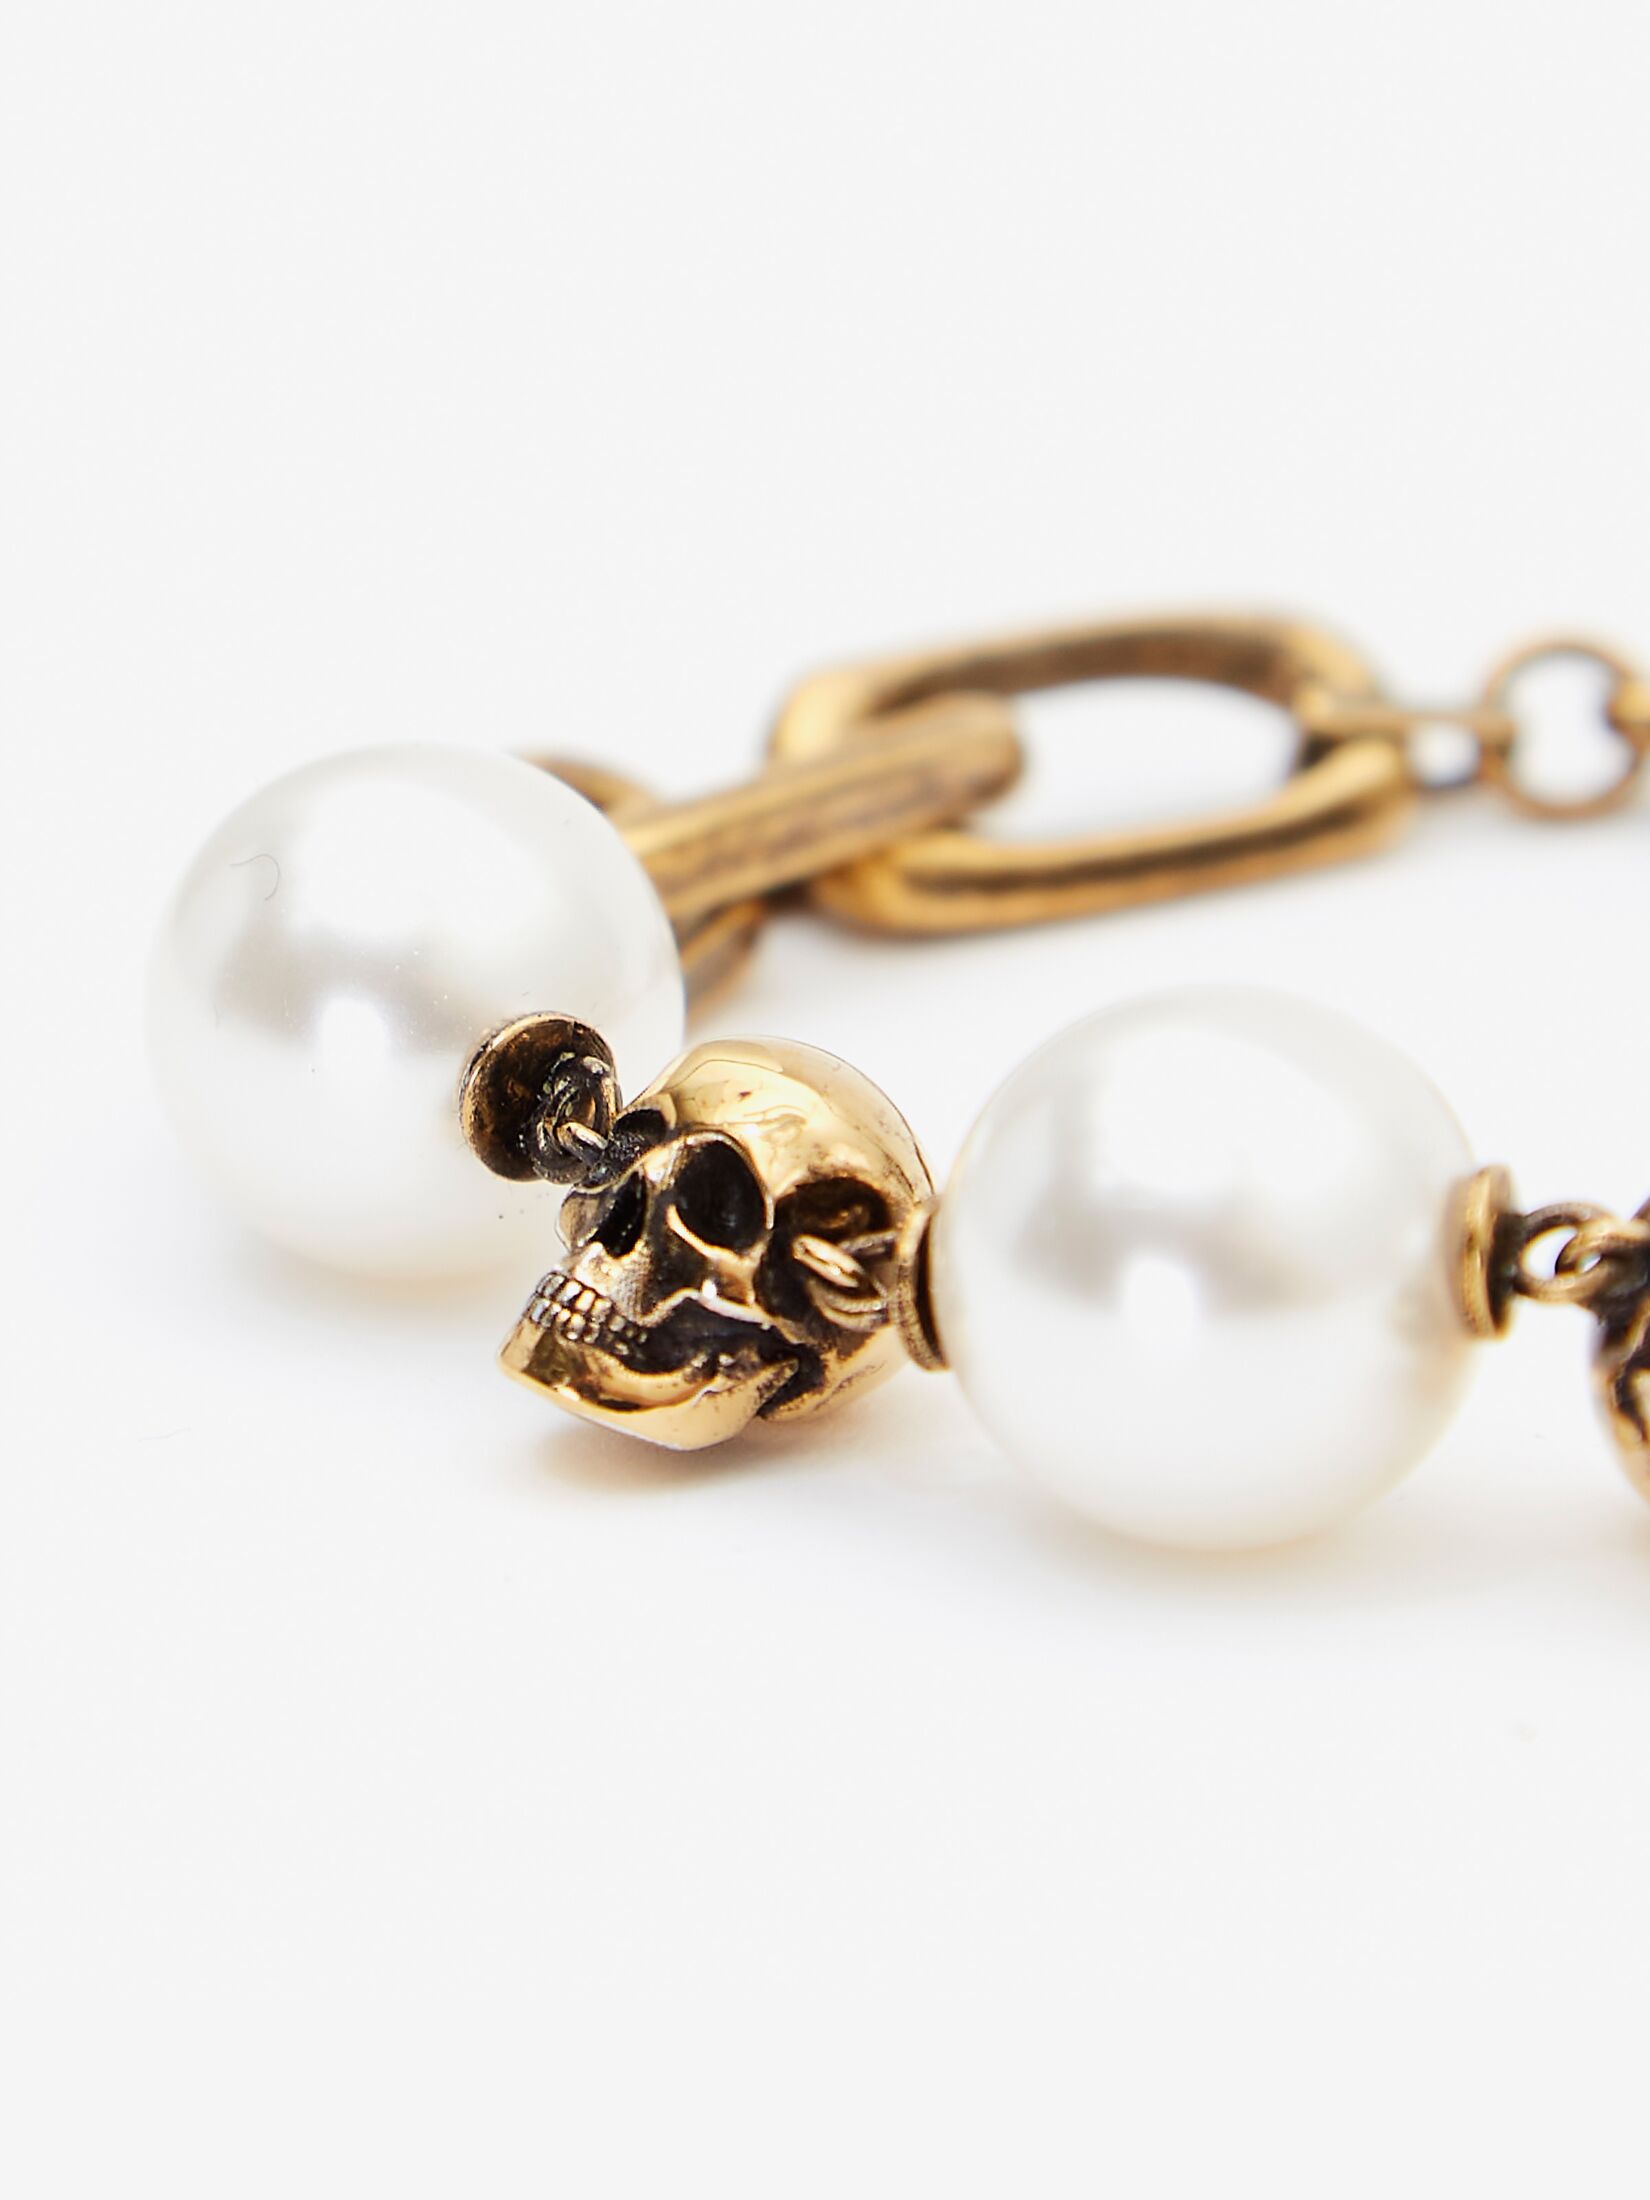 Pearl-like Skull Chain Bracelet